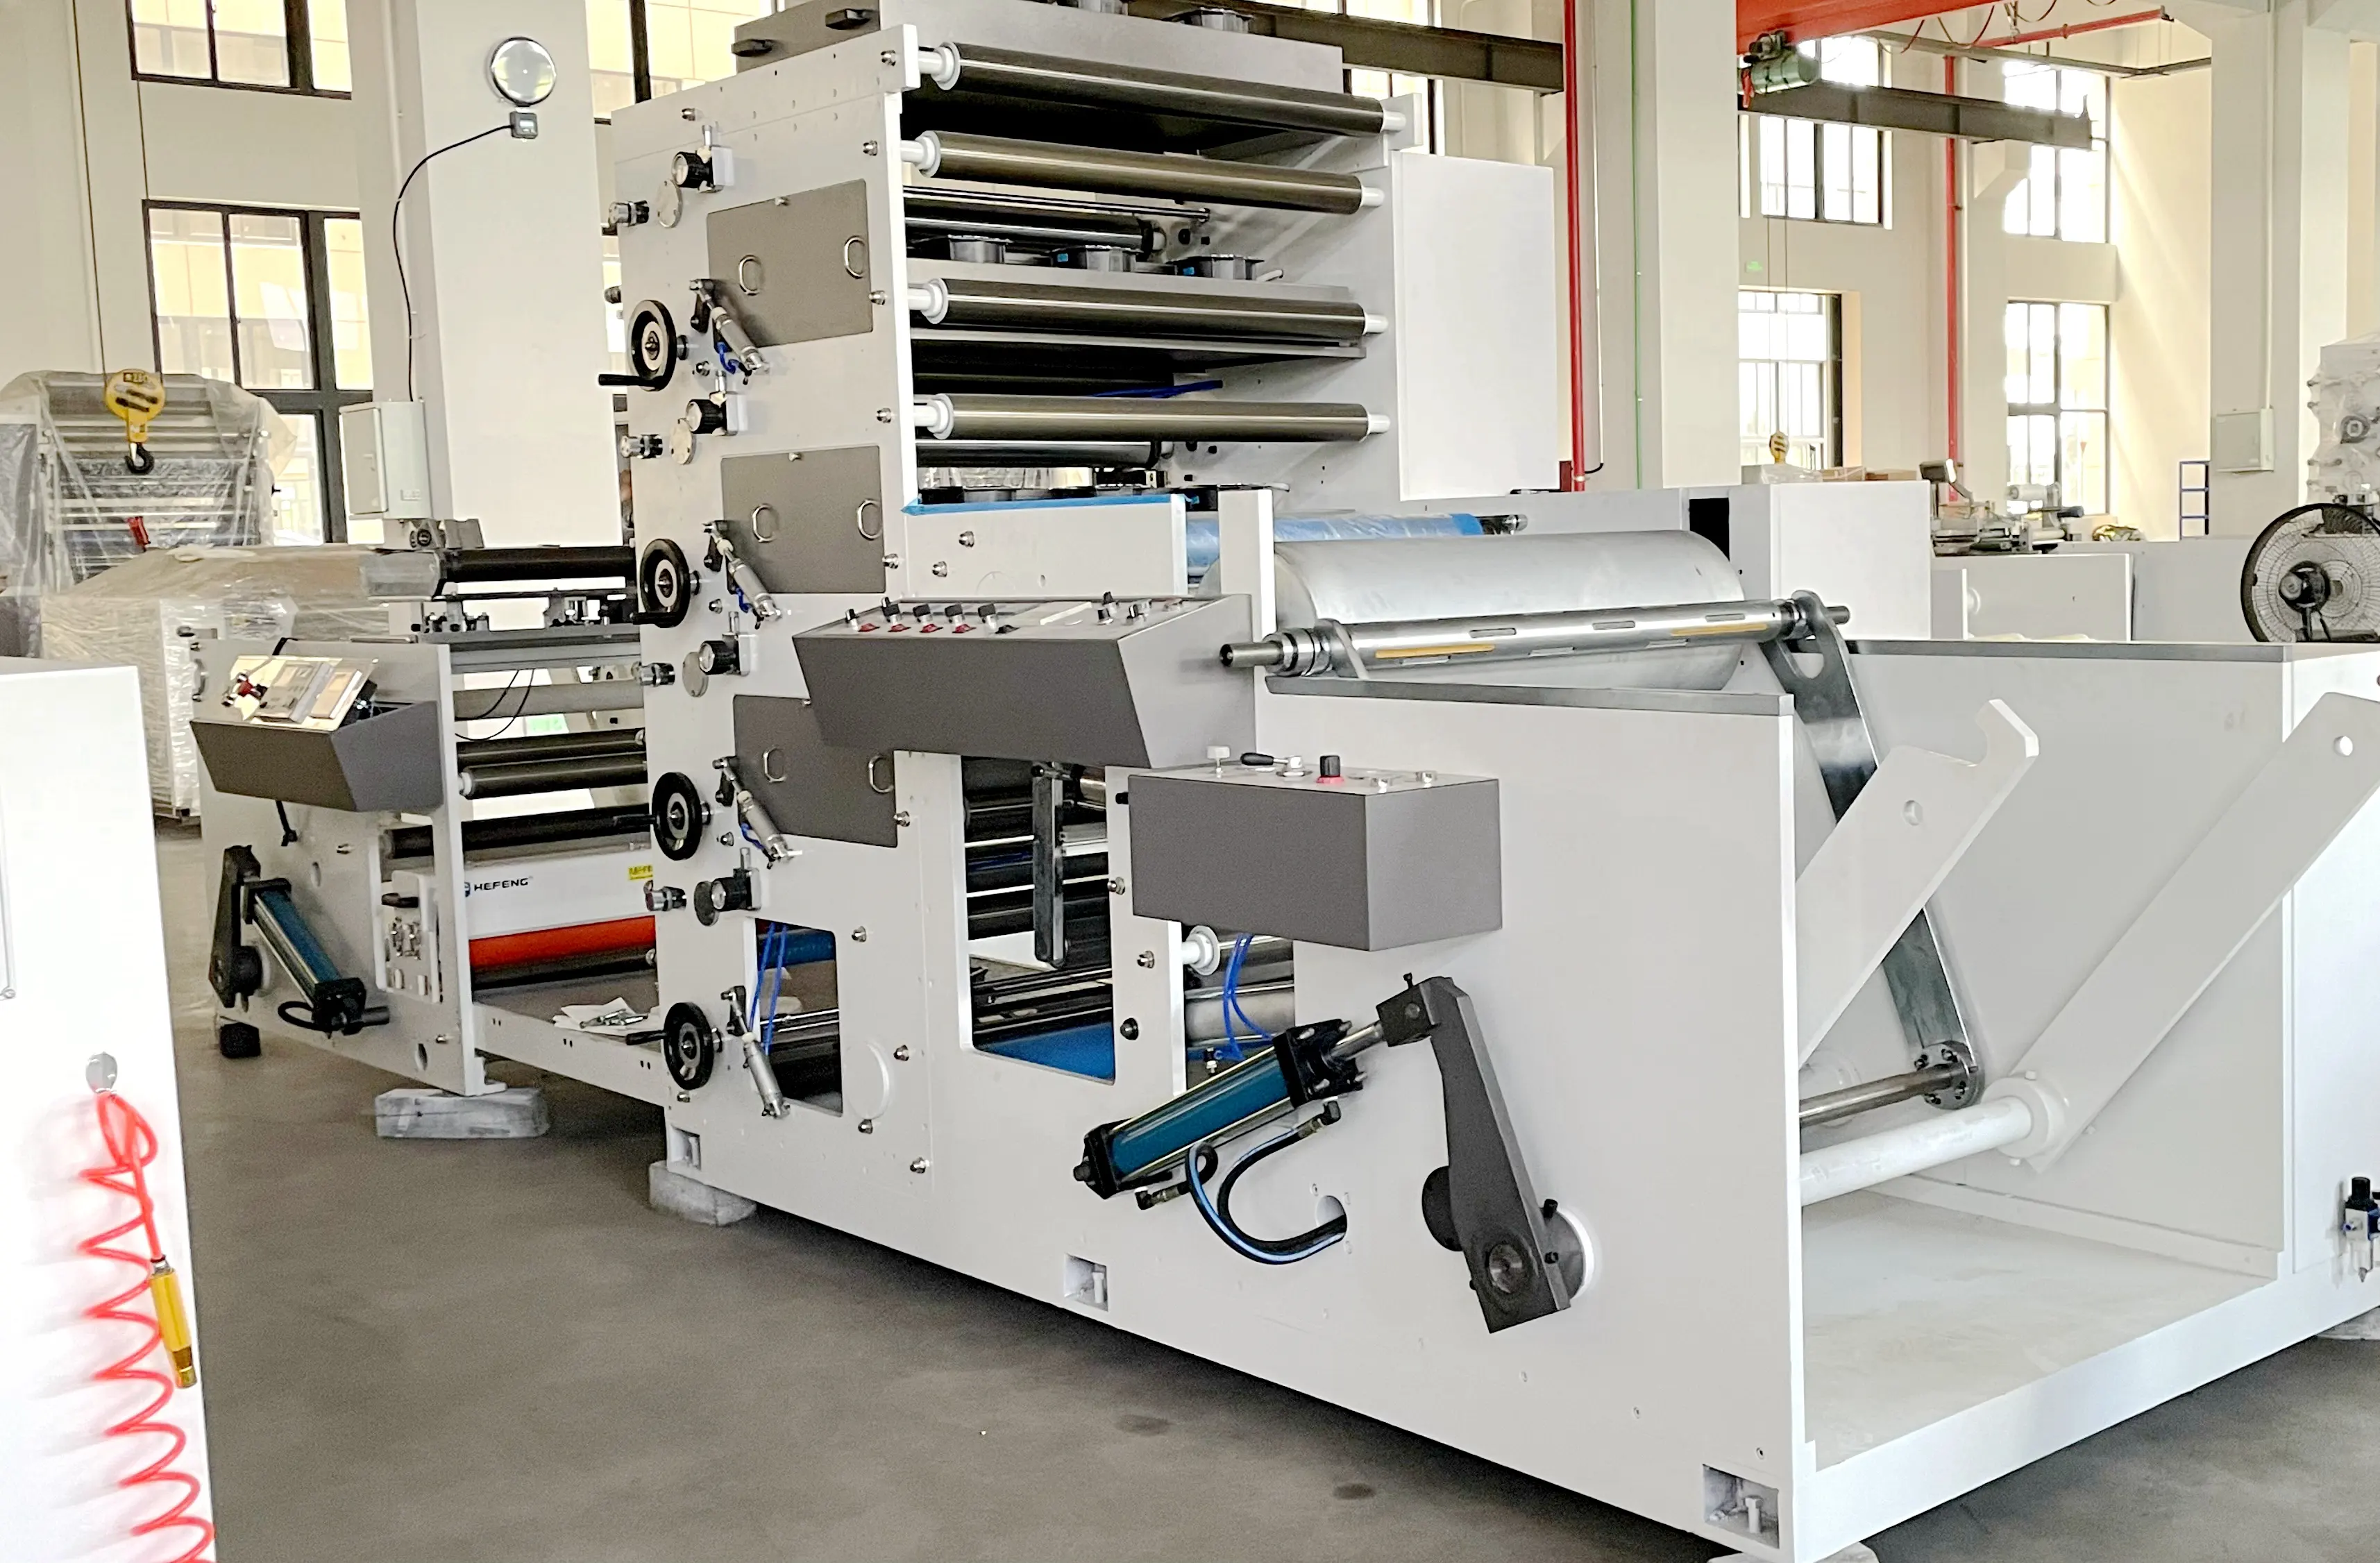 Imprimante flexgraphique, machine d'impression flexo et extrusion flexo, machine avec alimentation